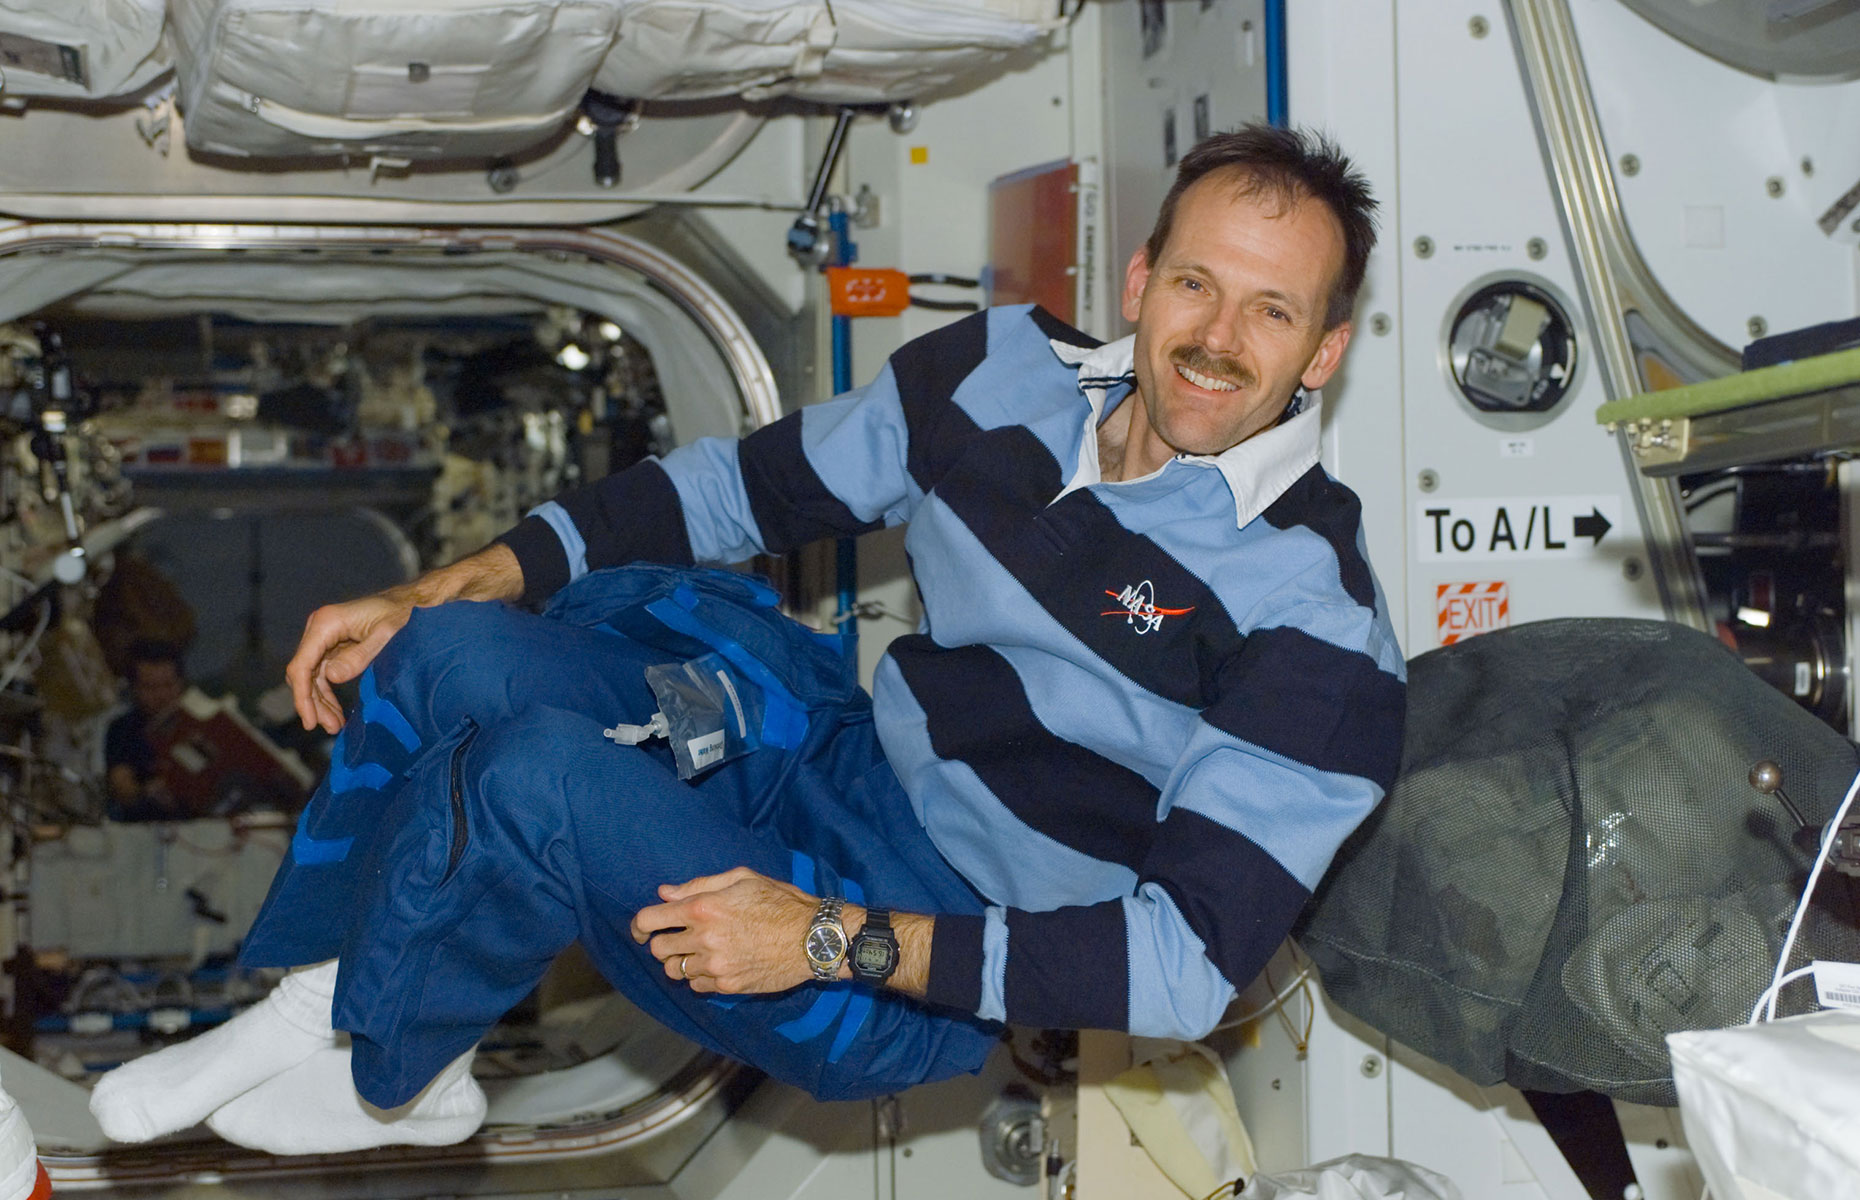 Steve Smith in space (Image: Courtesy of Steve Smith)